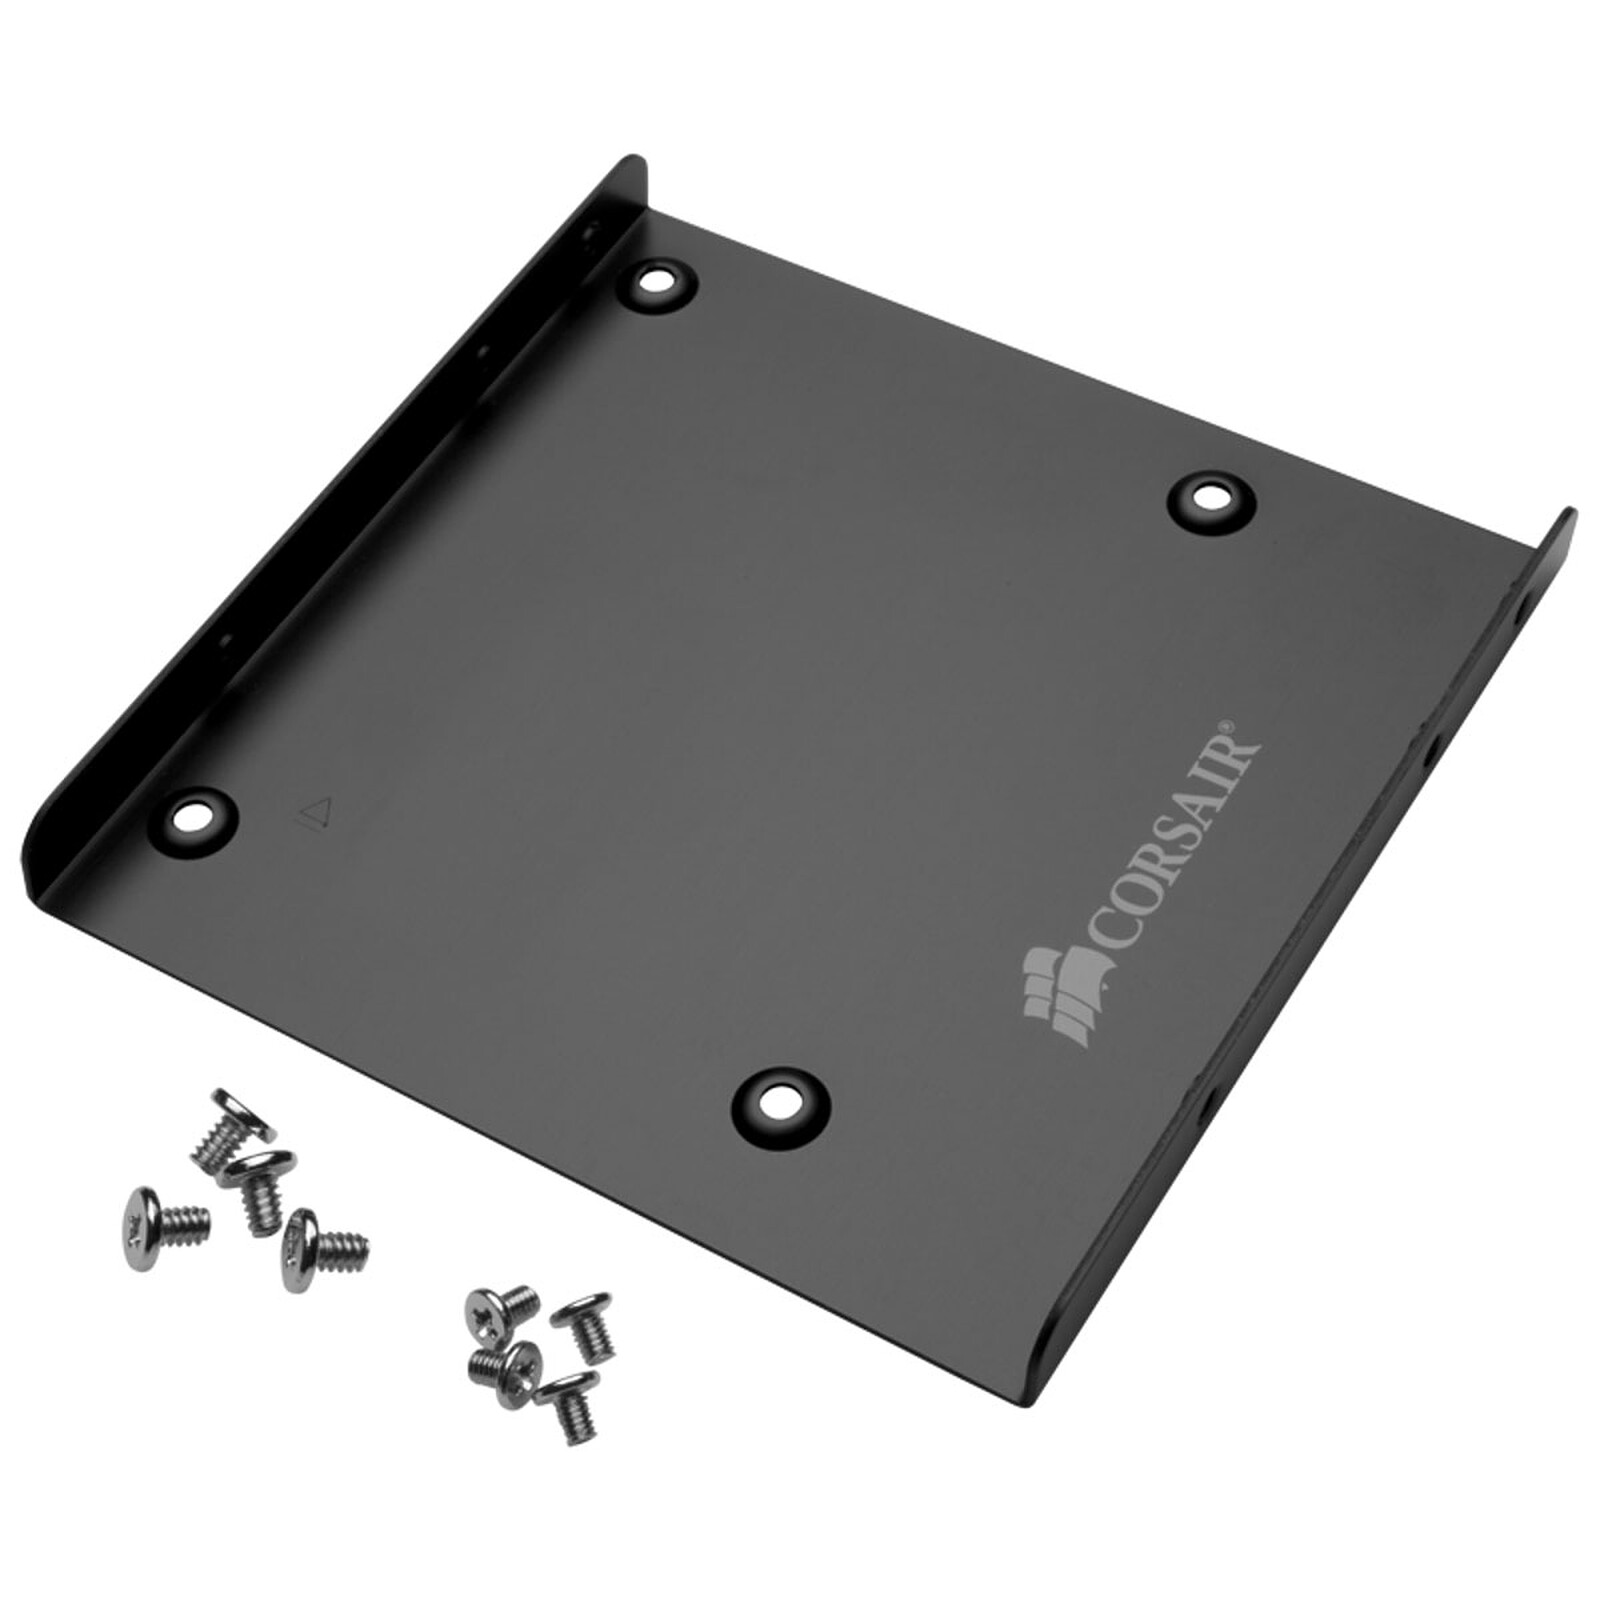 CorsairSoporte para SSD 2.5'' en rack de 3.5" - Rack disco duro Corsair LDLC